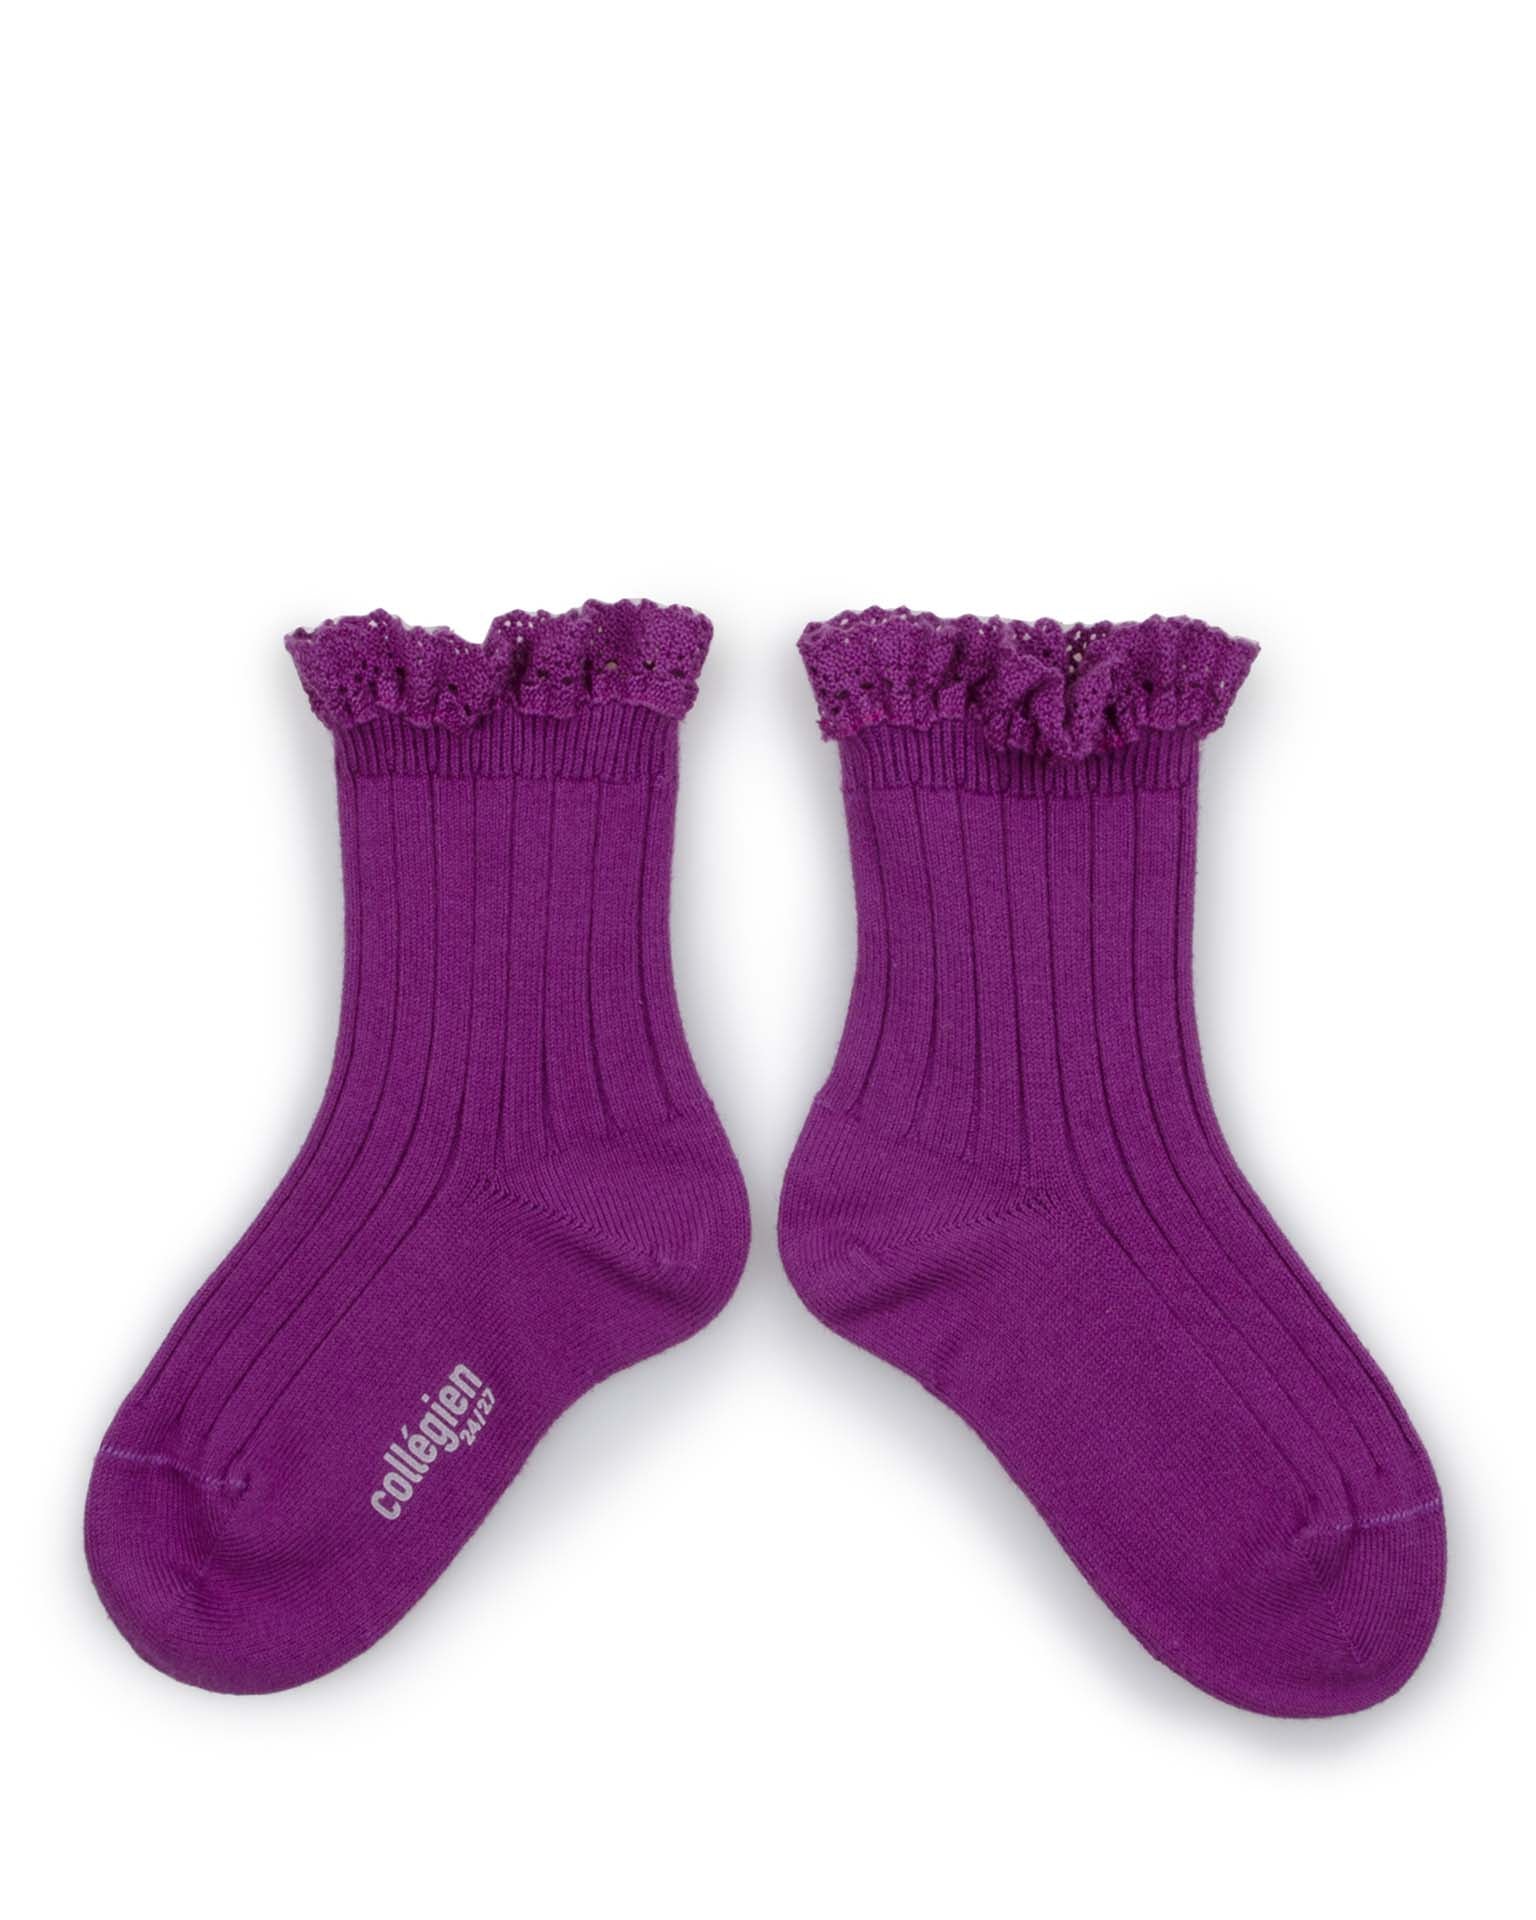 Little collégien accessories lili ankle socks in cyclamen